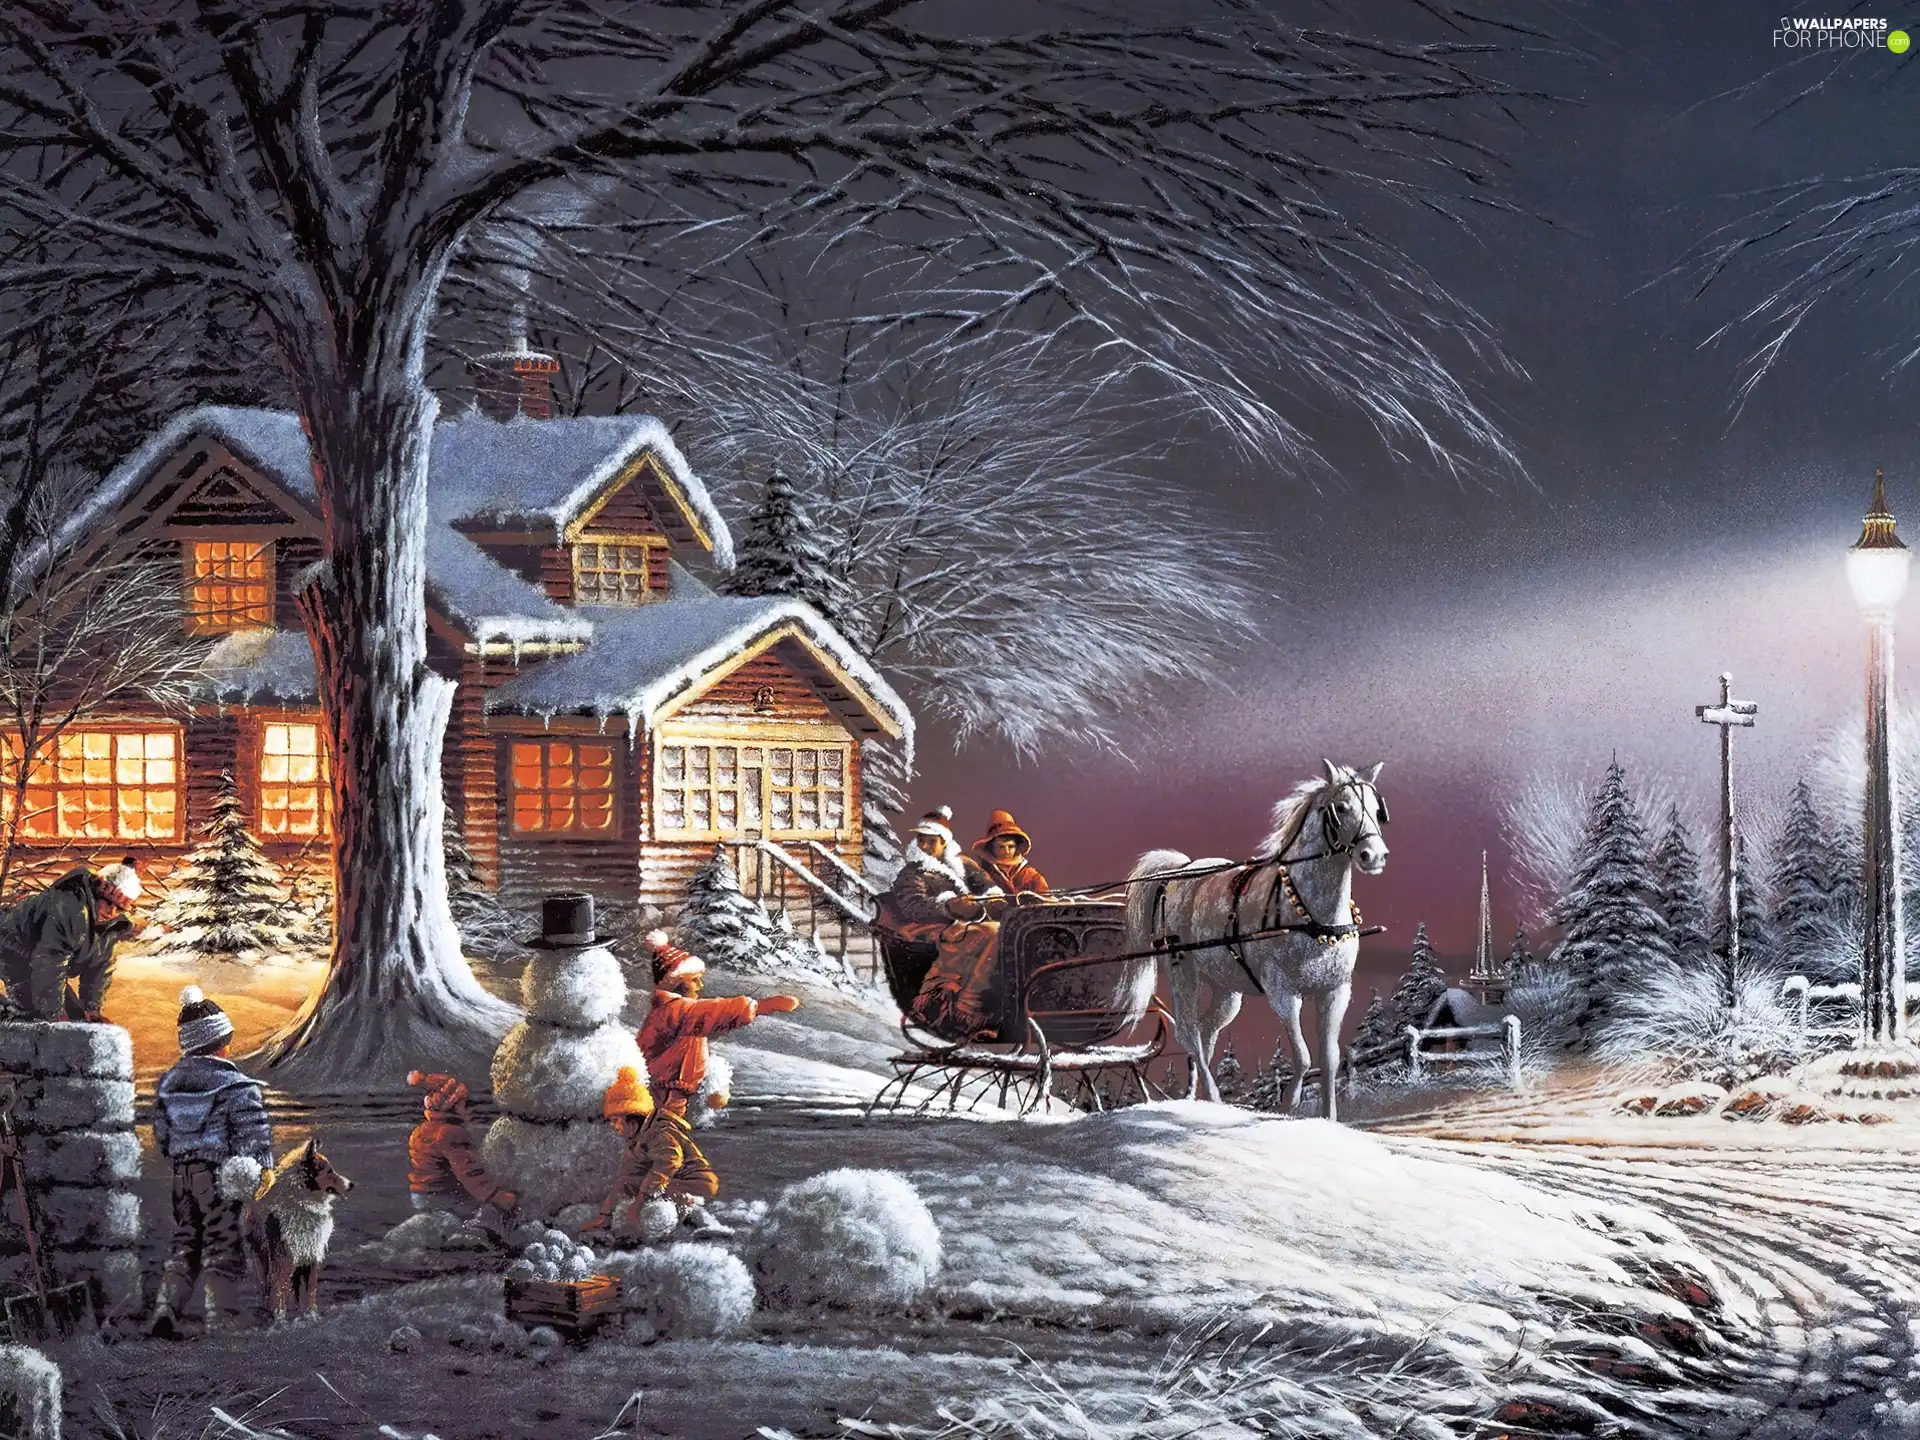 Snowman, winter, Kids, sleigh, house